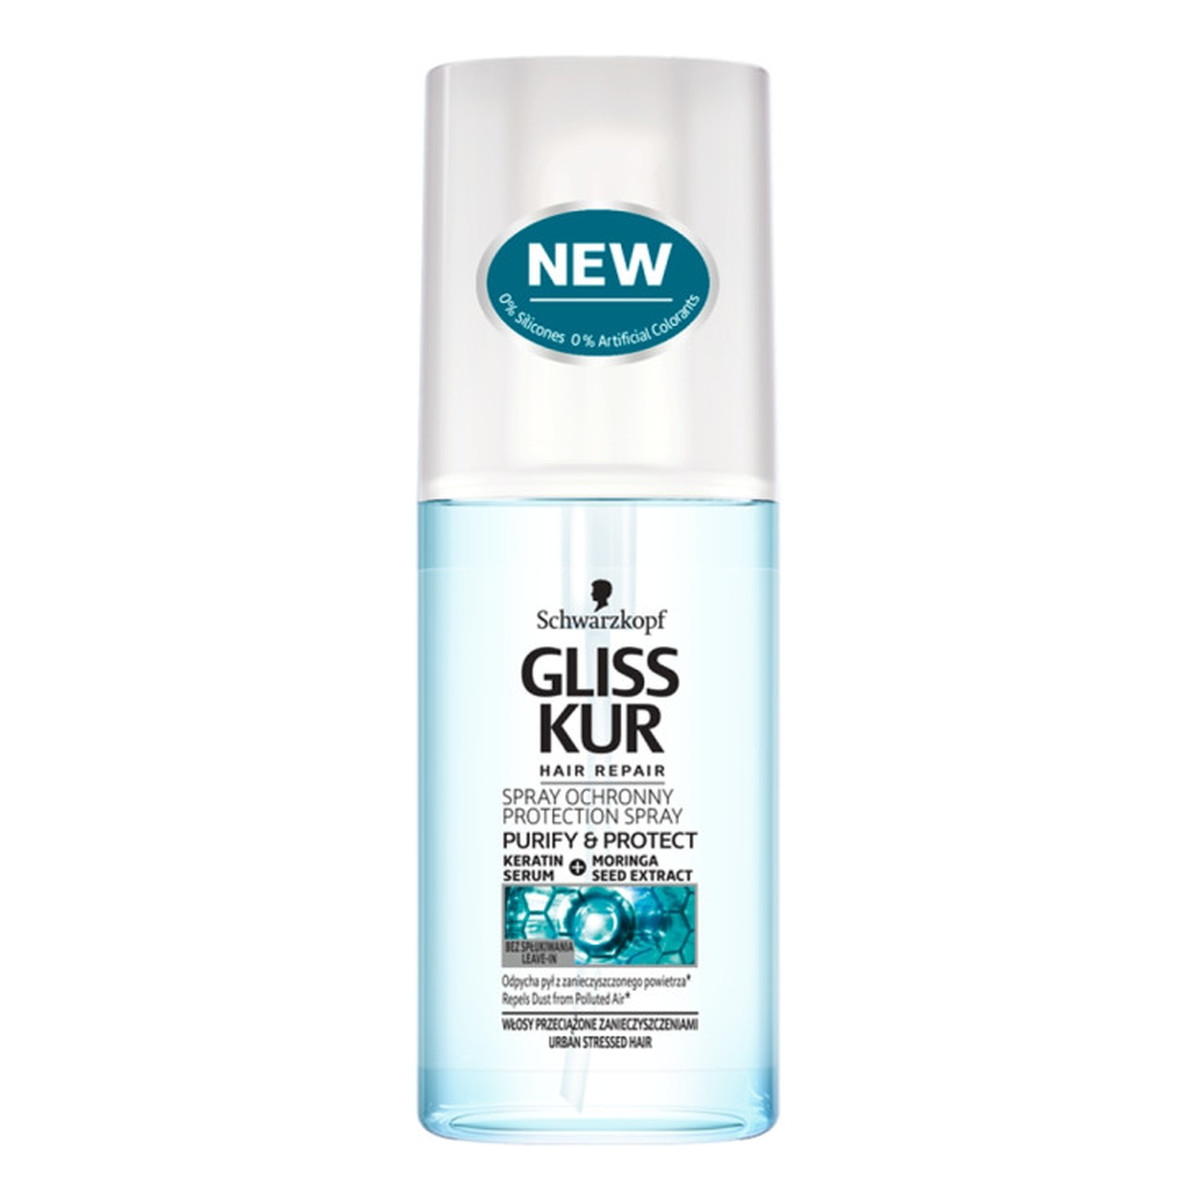 Gliss Purify & Protect Spray ochronny do włosów 75ml